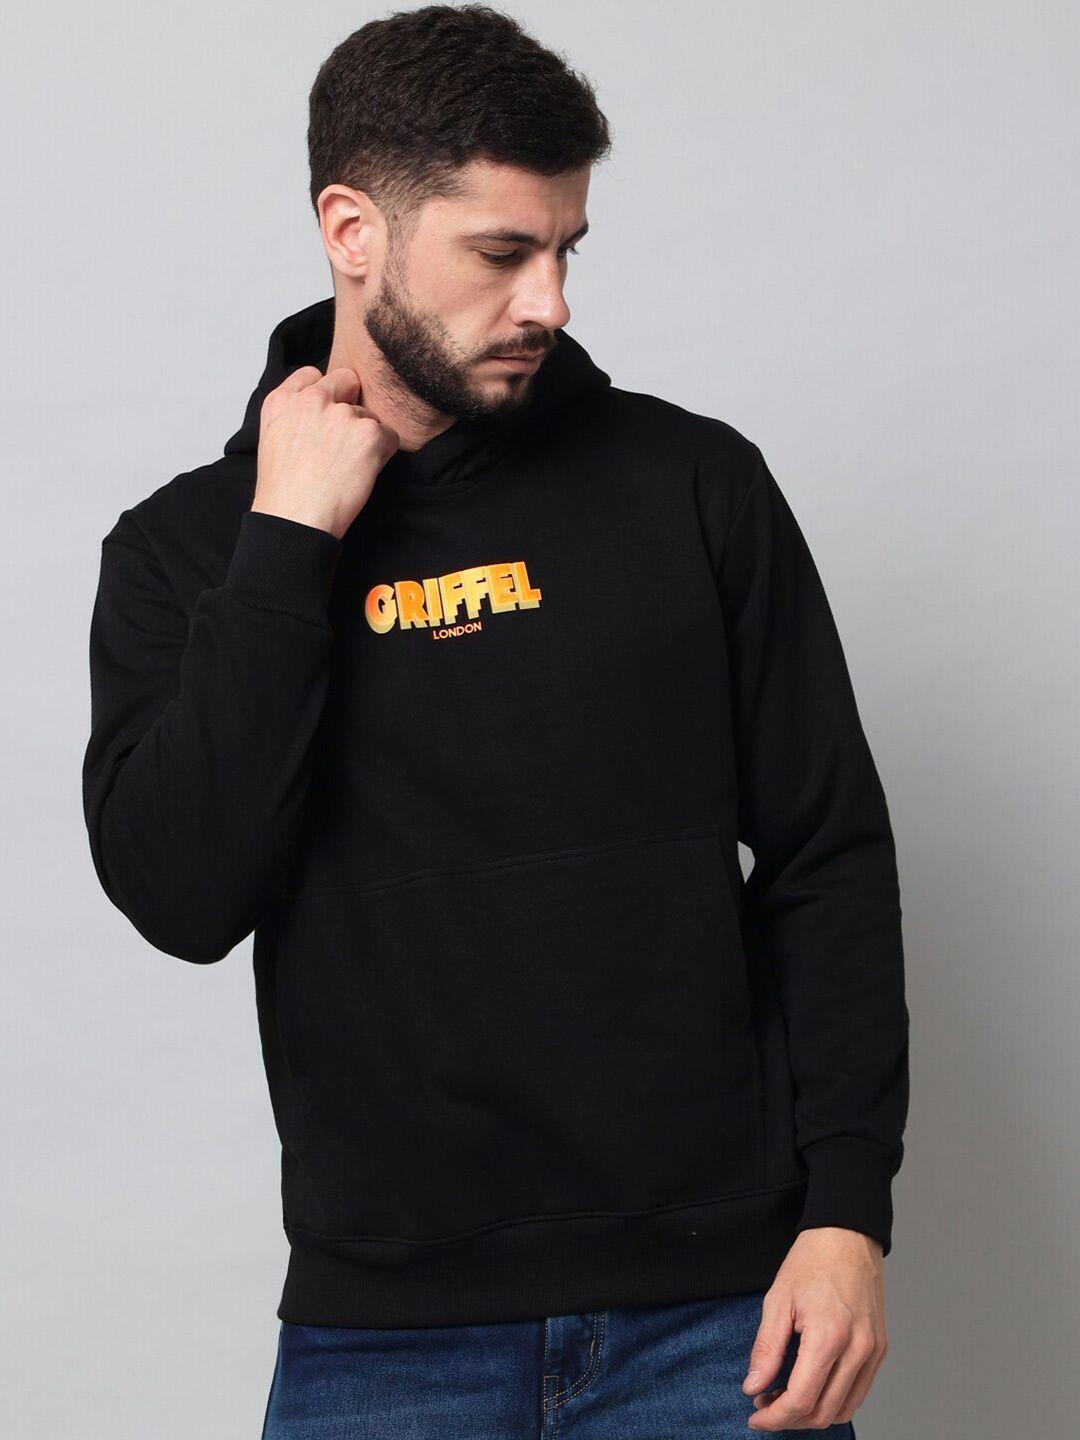 griffel-men-black-sweatshirt